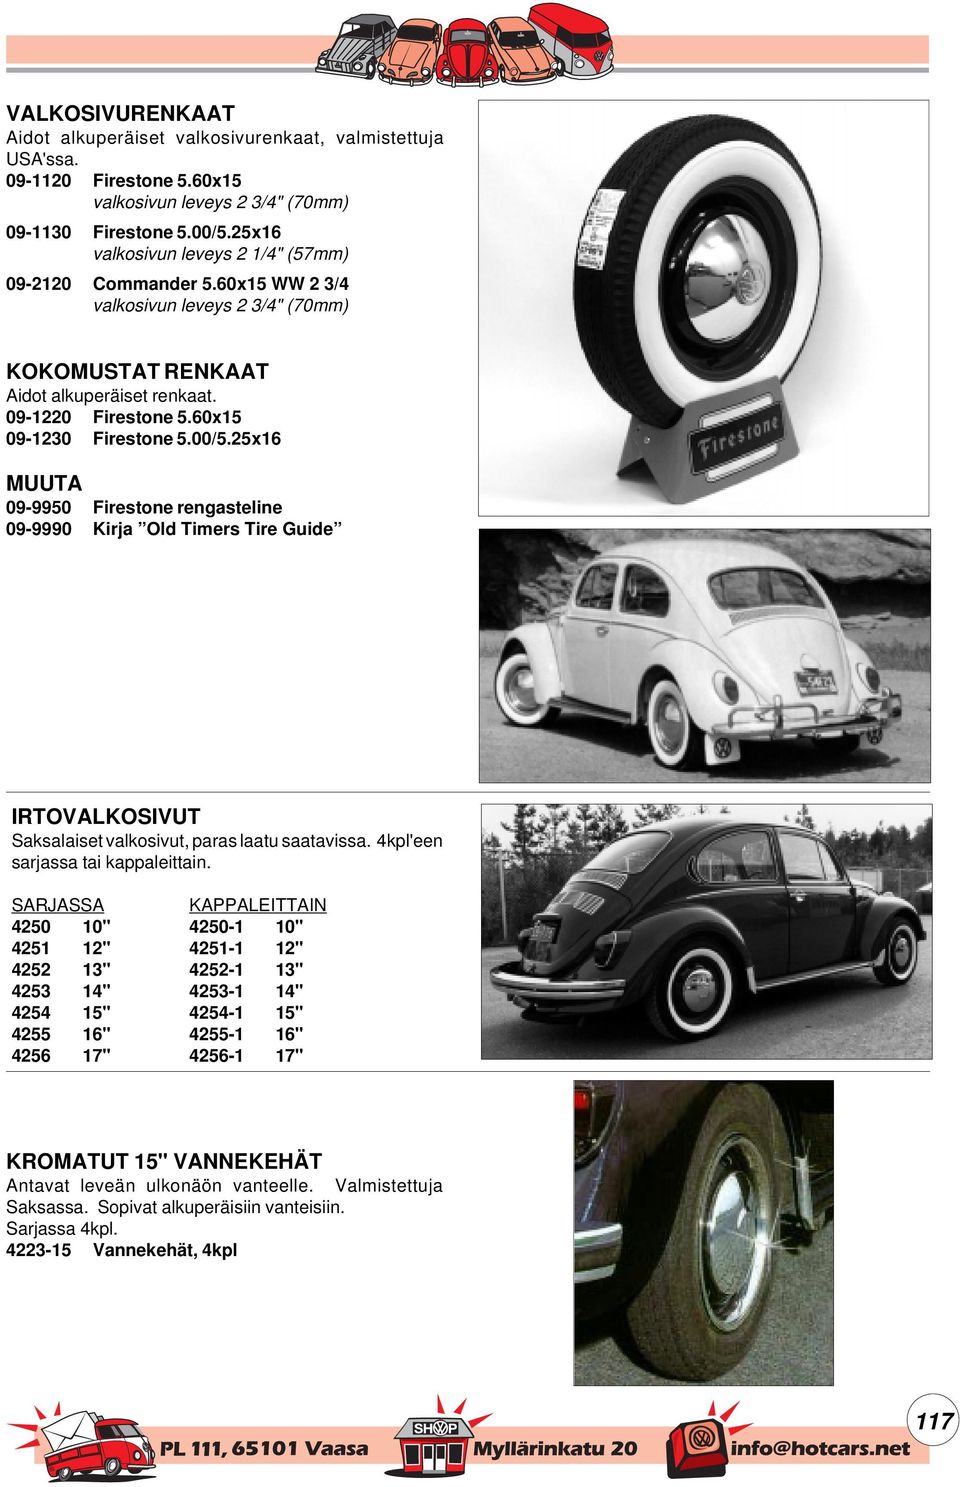 00/5.25x16 MUUTA 09-9950 Firestone rengasteline 09-9990 Kirja Old Timers Tire Guide IRTOVALKOSIVUT Saksalaiset valkosivut, paras laatu saatavissa. 4kpl'een sarjassa tai kappaleittain.